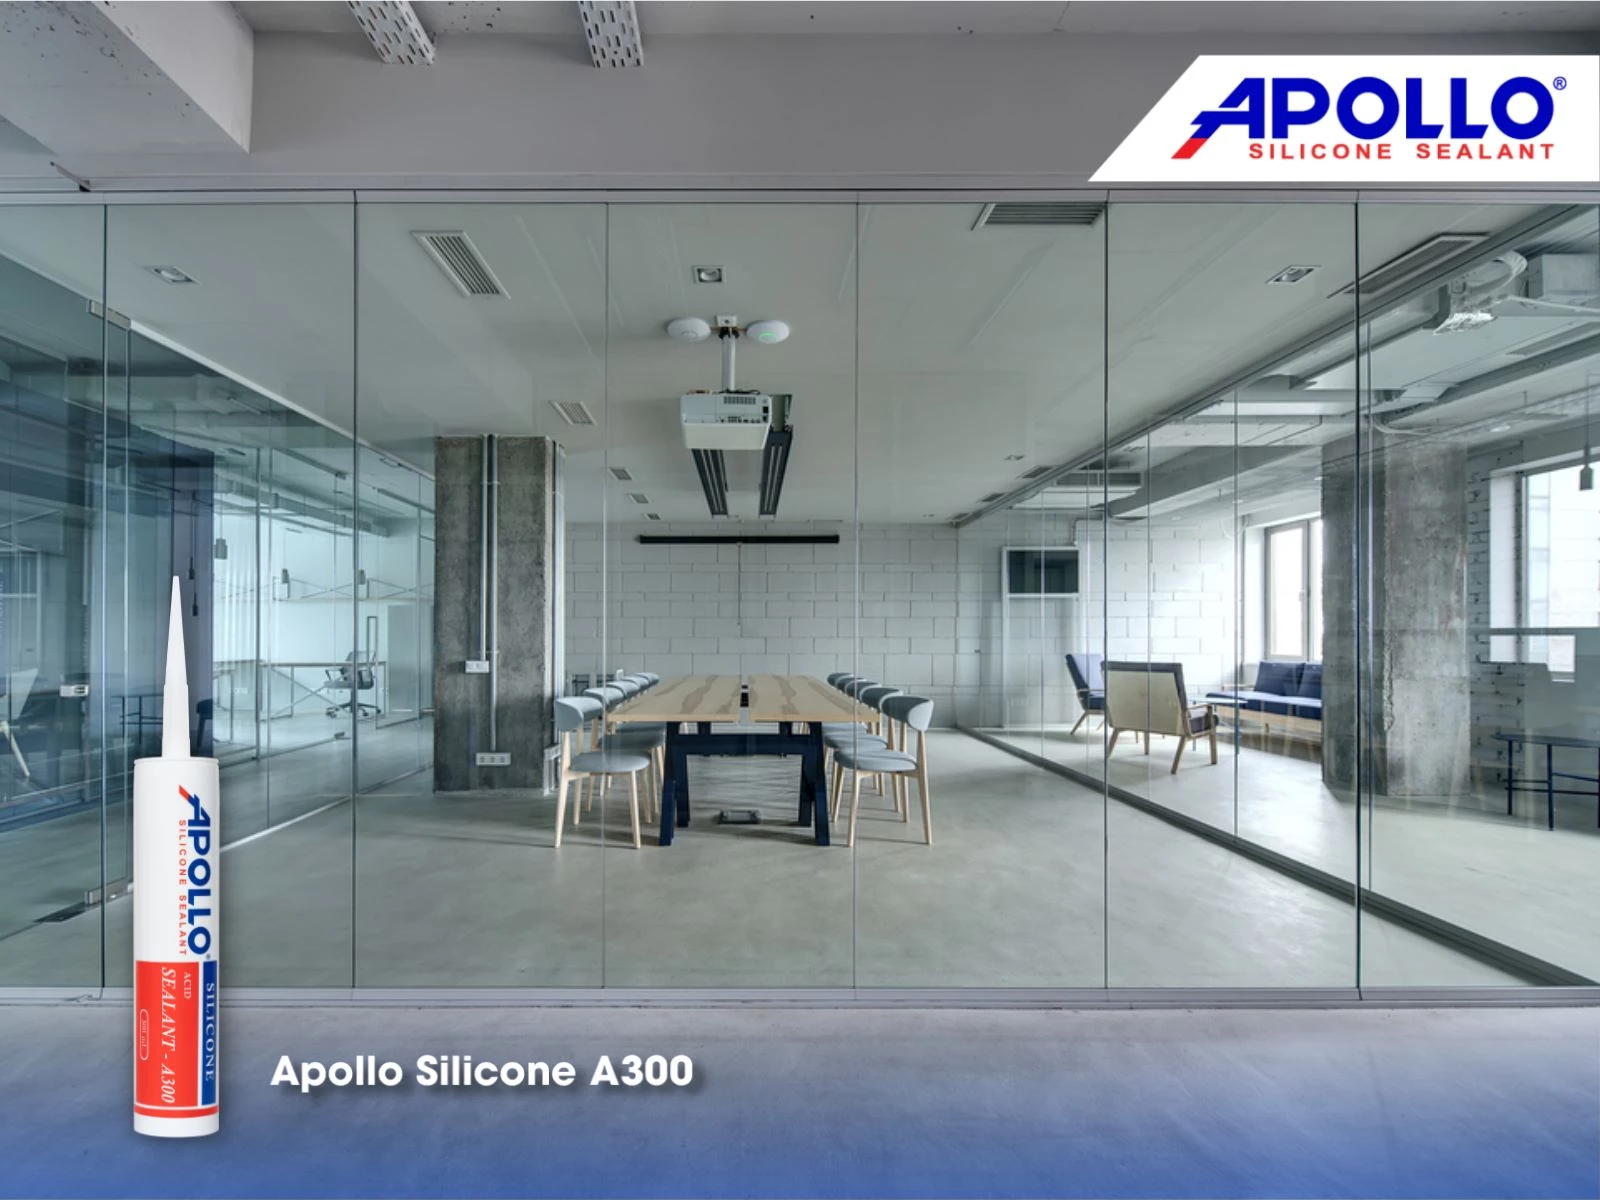 Apollo Silicone A300 phù hợp thi công trám trét vật liệu kính như vách kính văn phòng